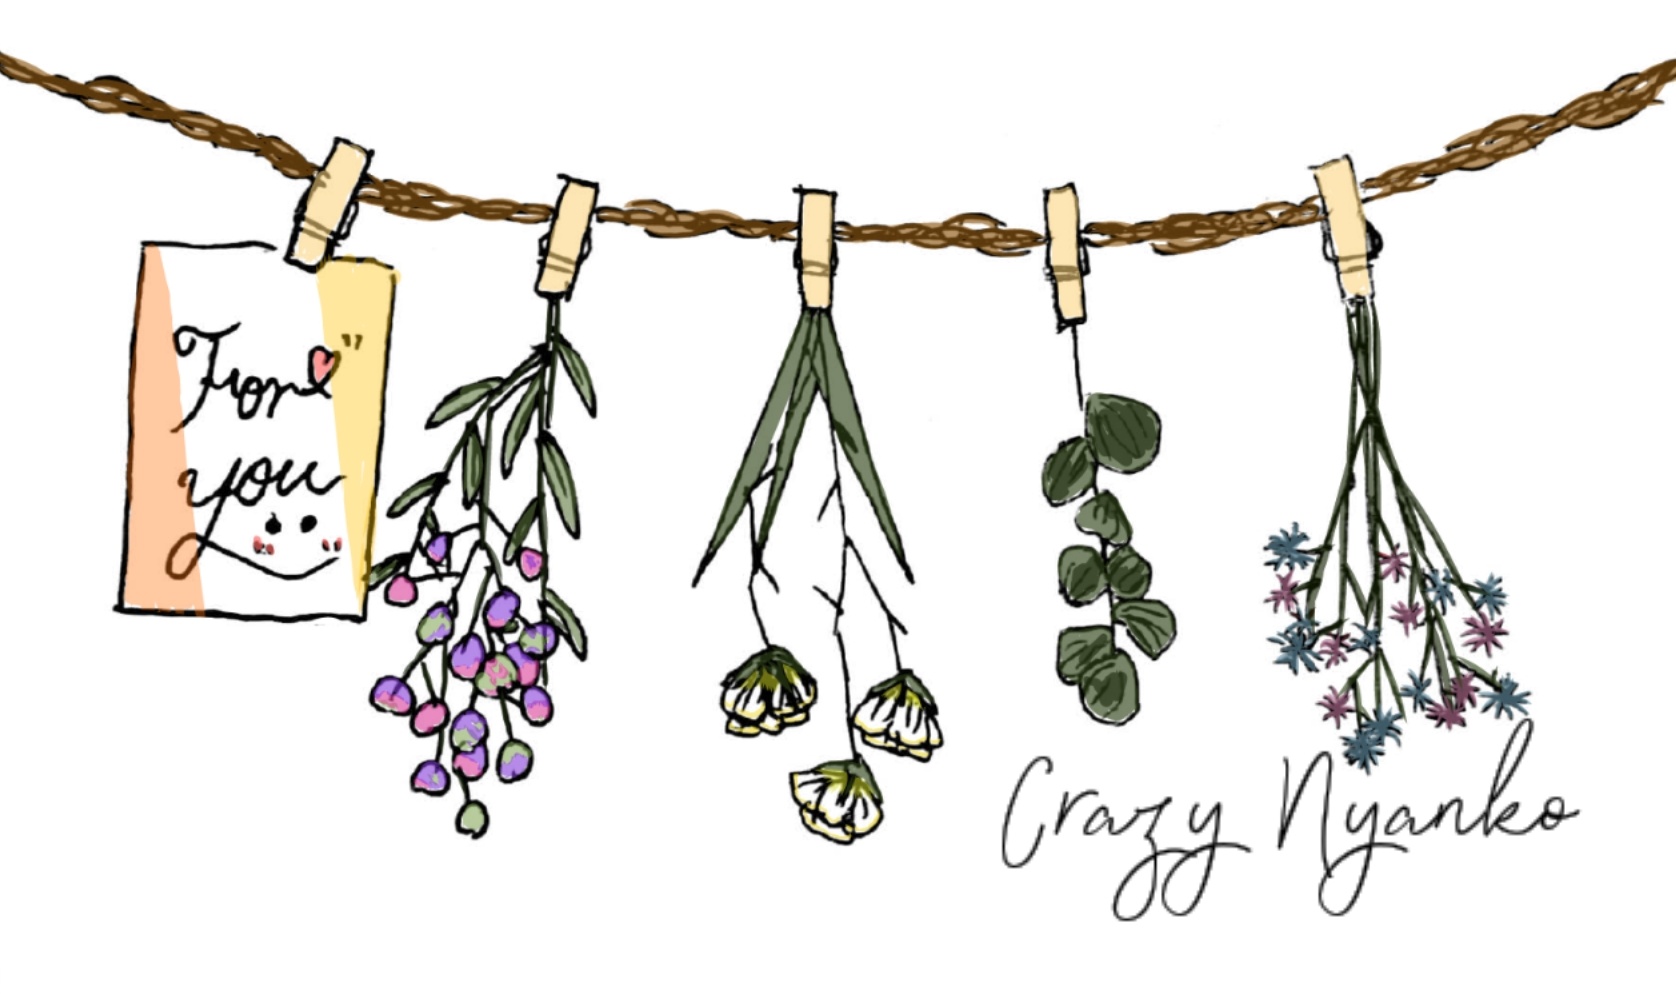 Crazy Nyanko クラフト雑貨 無料イラスト素材 手描きイラスト 花好きです こちらから無料ダウンロードもできます T Co Jkynpchxmq イラストを4枚貼ると秋風に乗って絵柄を好いてくれる人の元へ届くらしい 花 花好きさんと繋がりたい